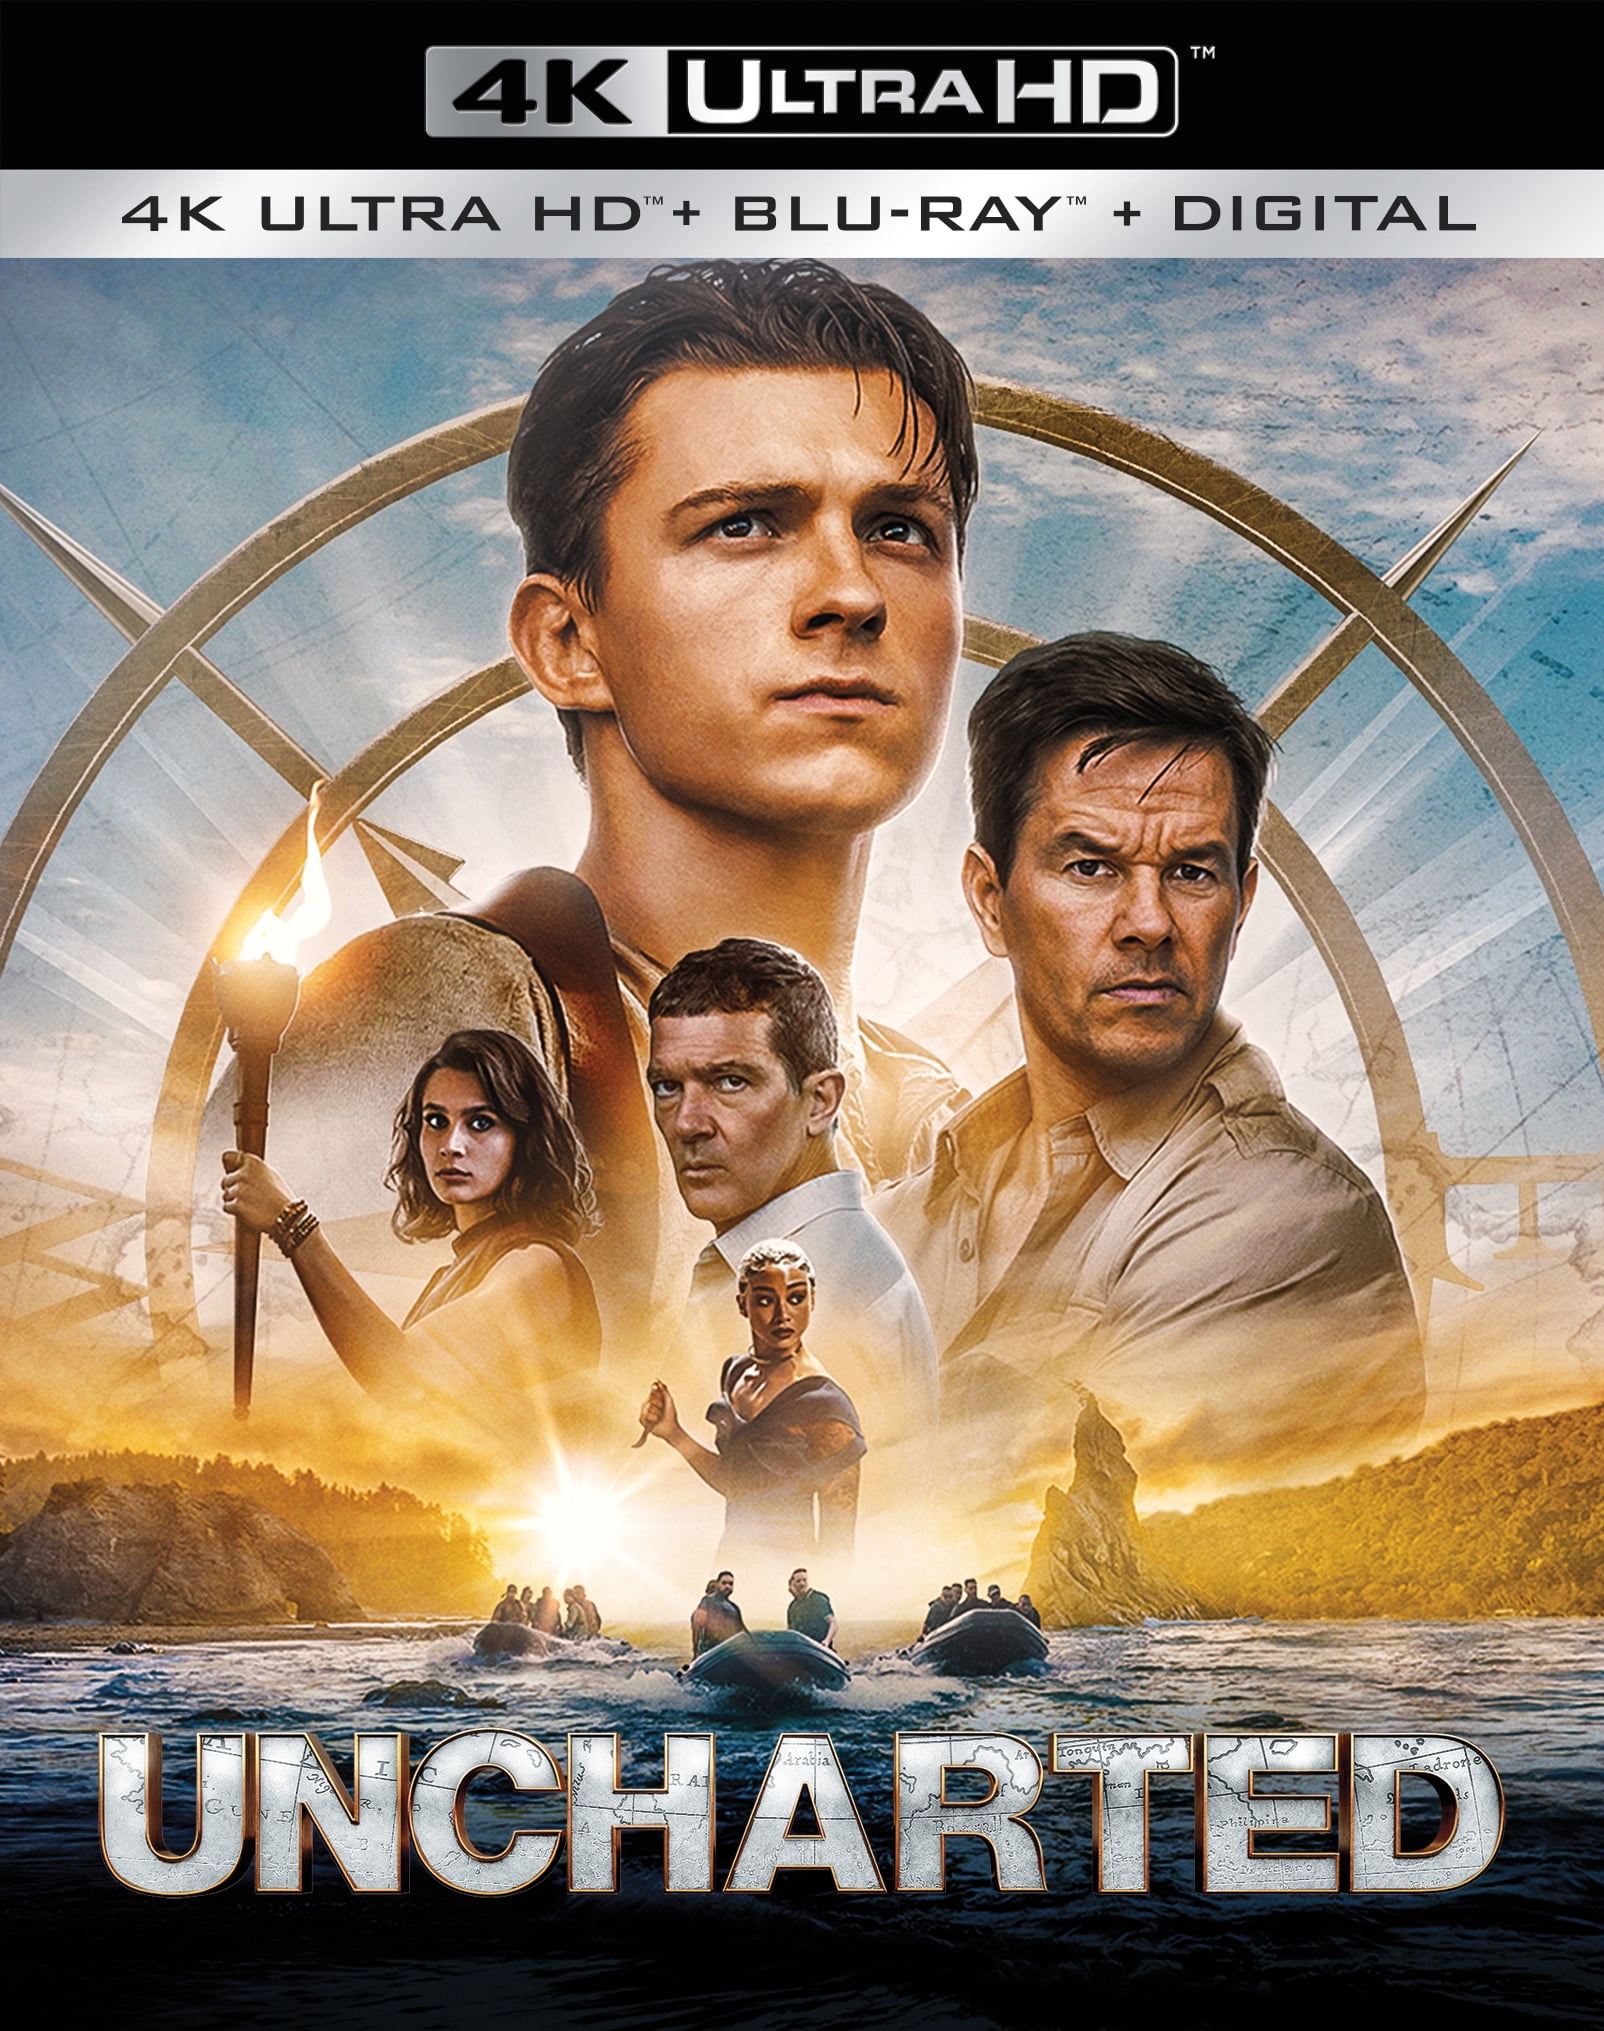 Uncharted - Blu-ray